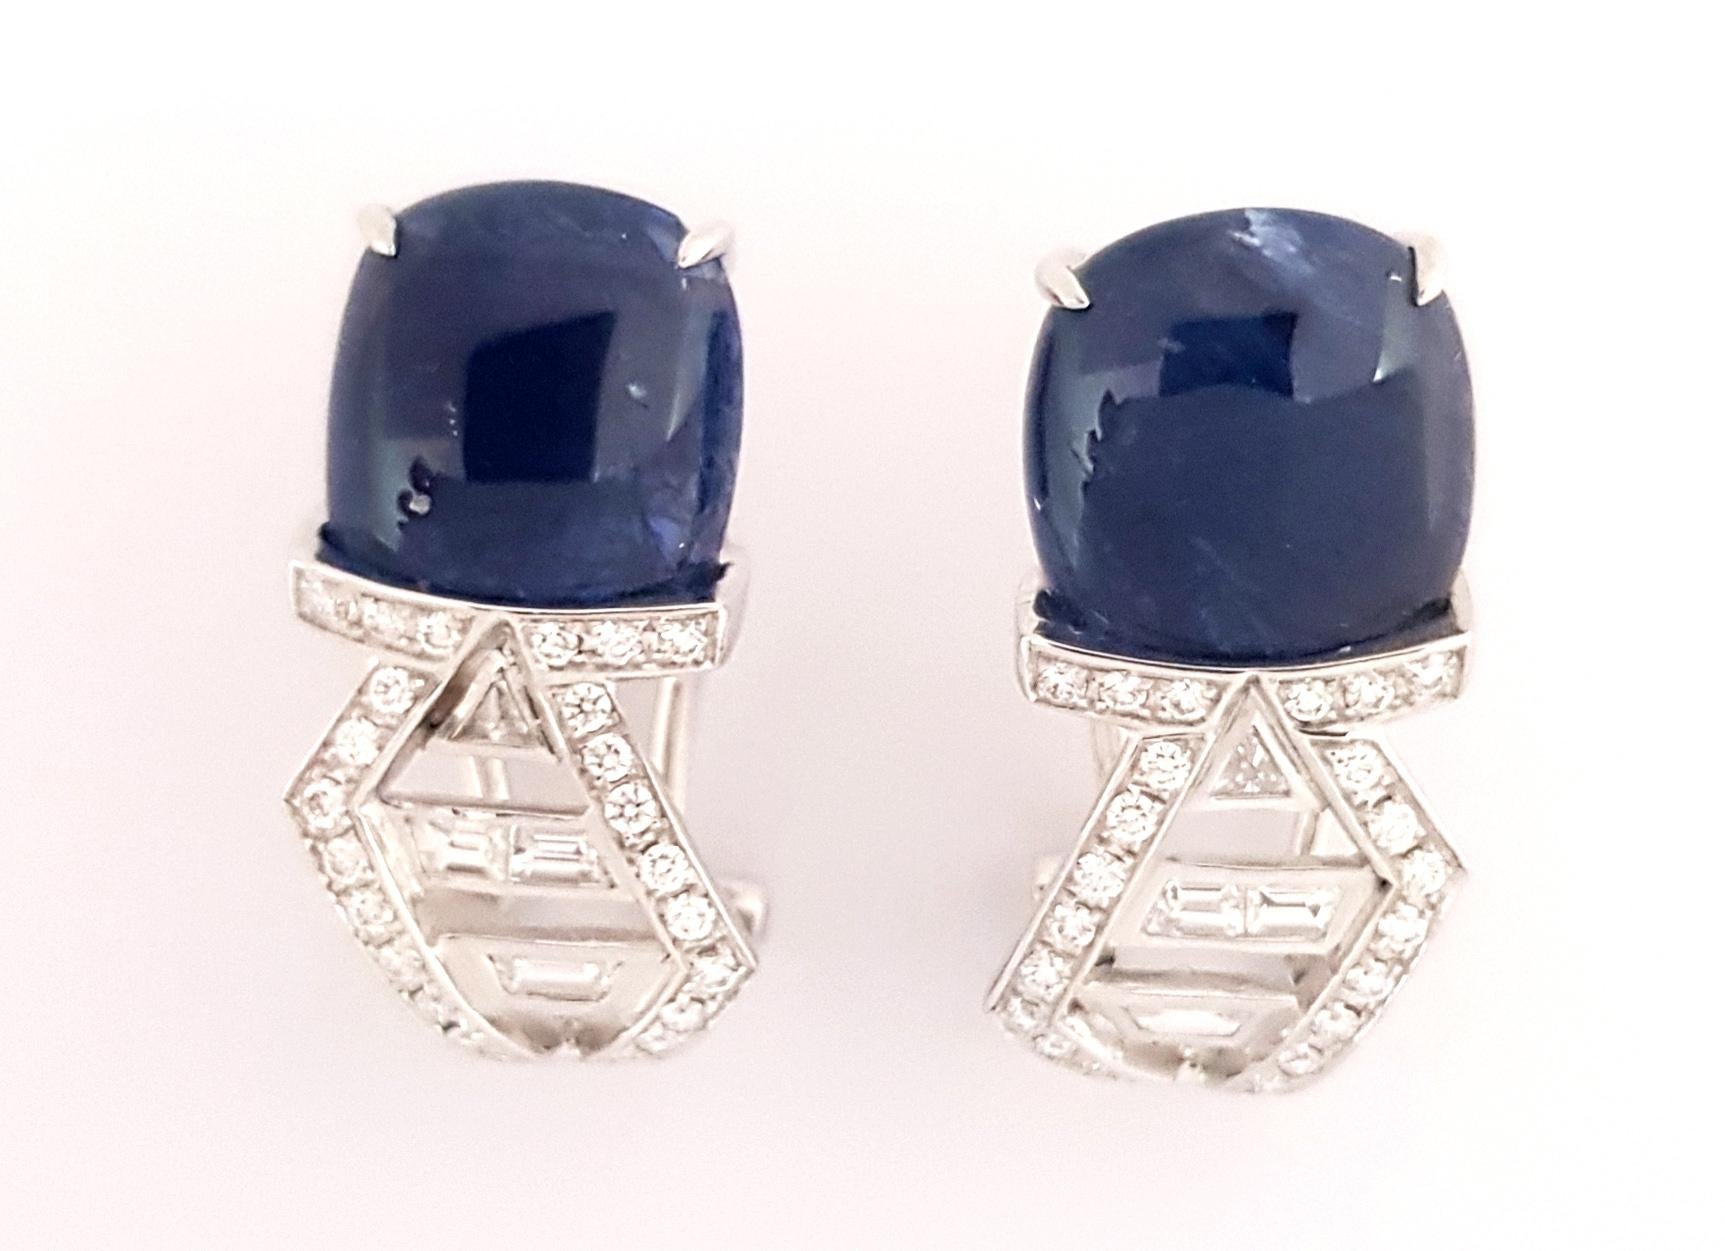 Boucles d'oreilles composées d'un saphir bleu cabochon de 11,21 carats et d'un diamant de 0,66 carat, le tout dans une monture en or blanc 18 carats.

Largeur : 0,7 cm
Longueur : 2,4 cm
Poids : 6,06 grammes

L'ancienne tradition japonaise du pliage